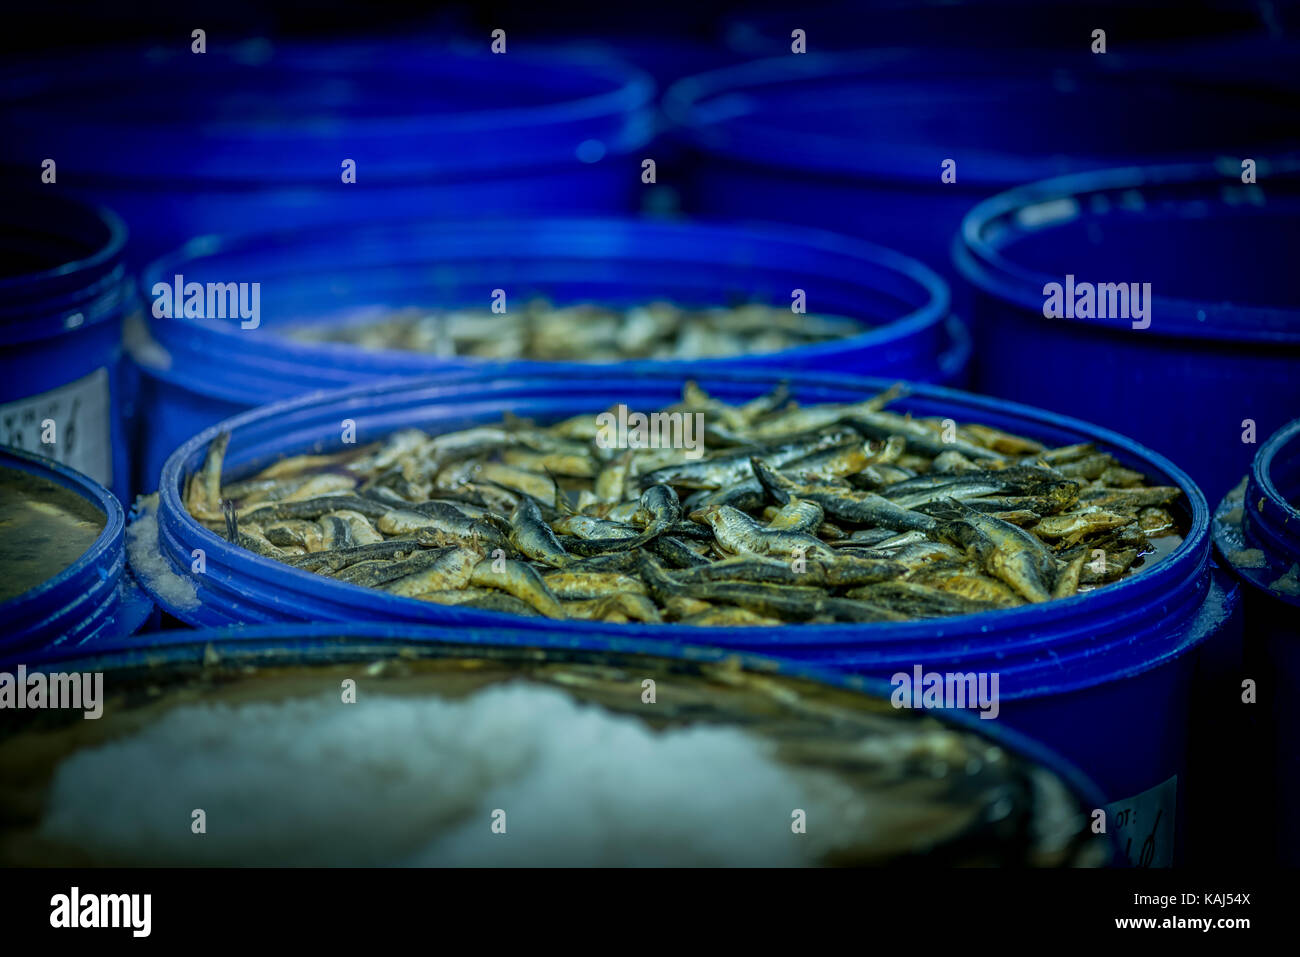 Acciughe in salamoia salata soluzione al roque anchois acciuga nella factory di collioure Francia Foto Stock